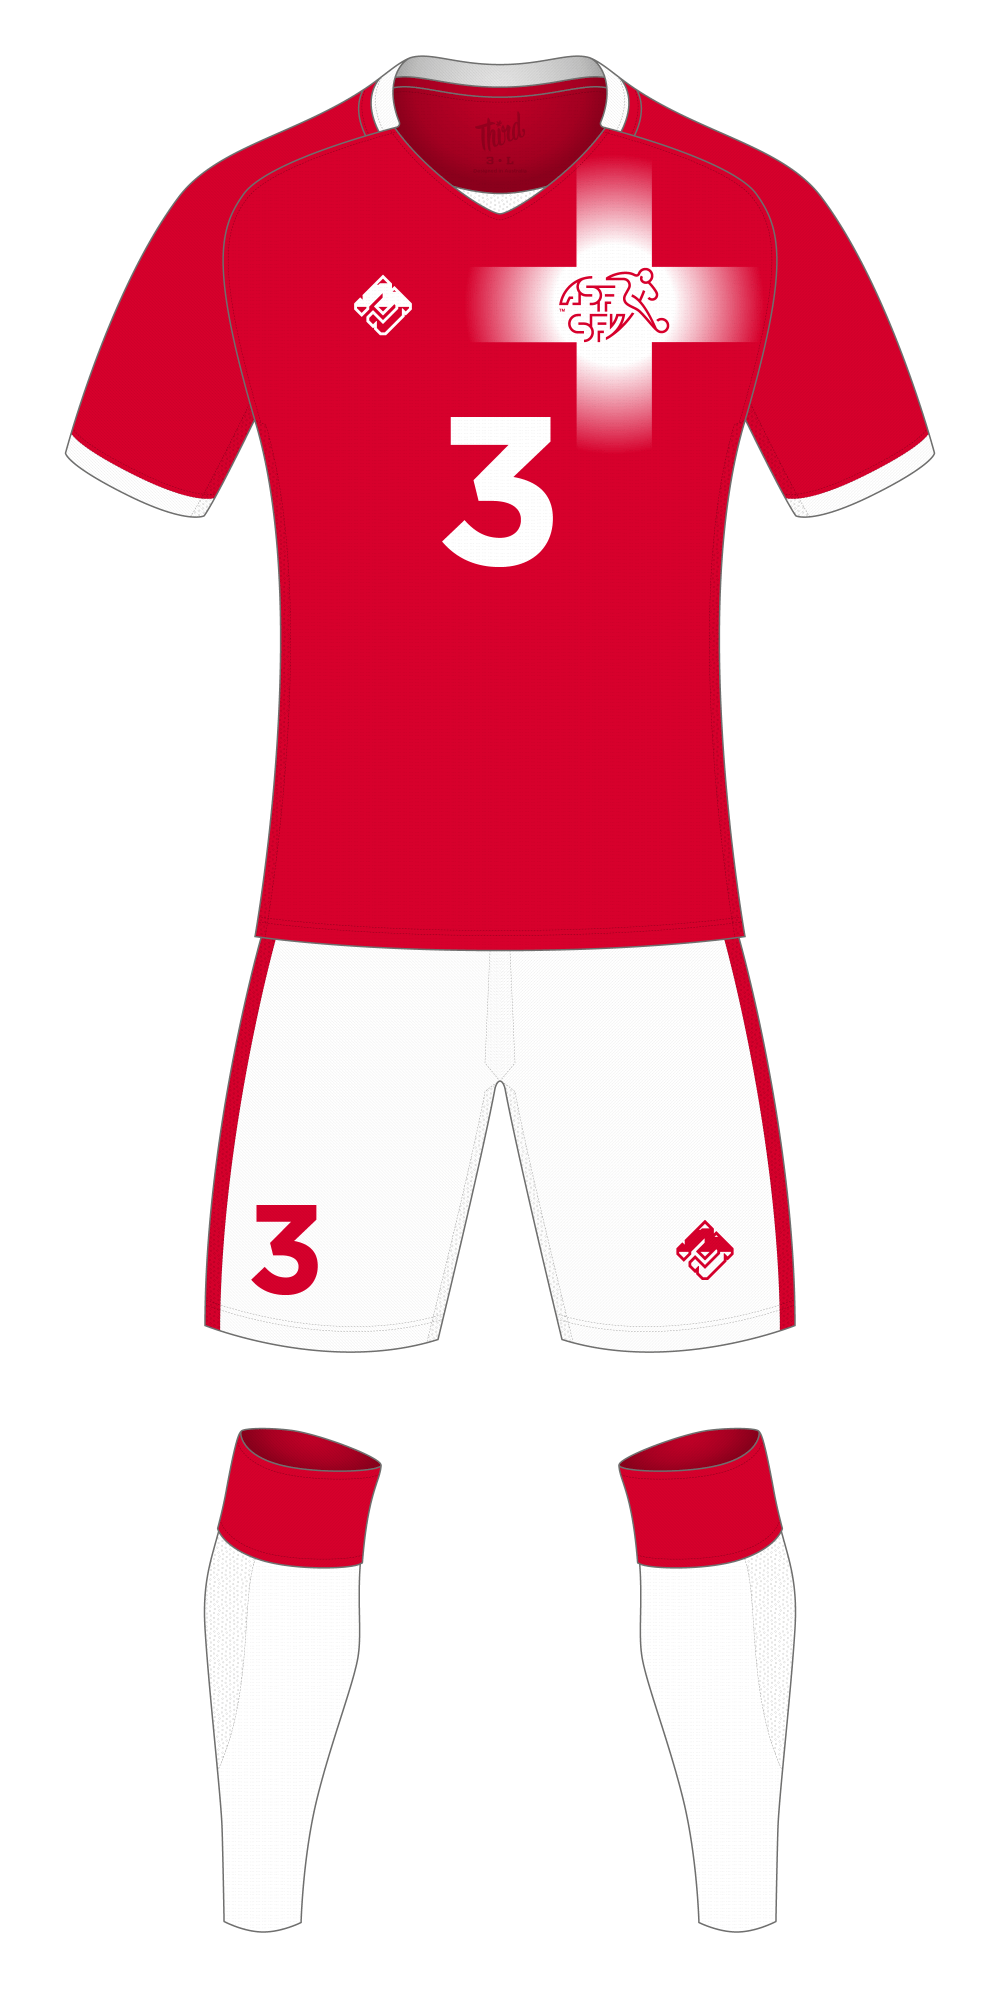 Switzerland World Cup 2018 concept